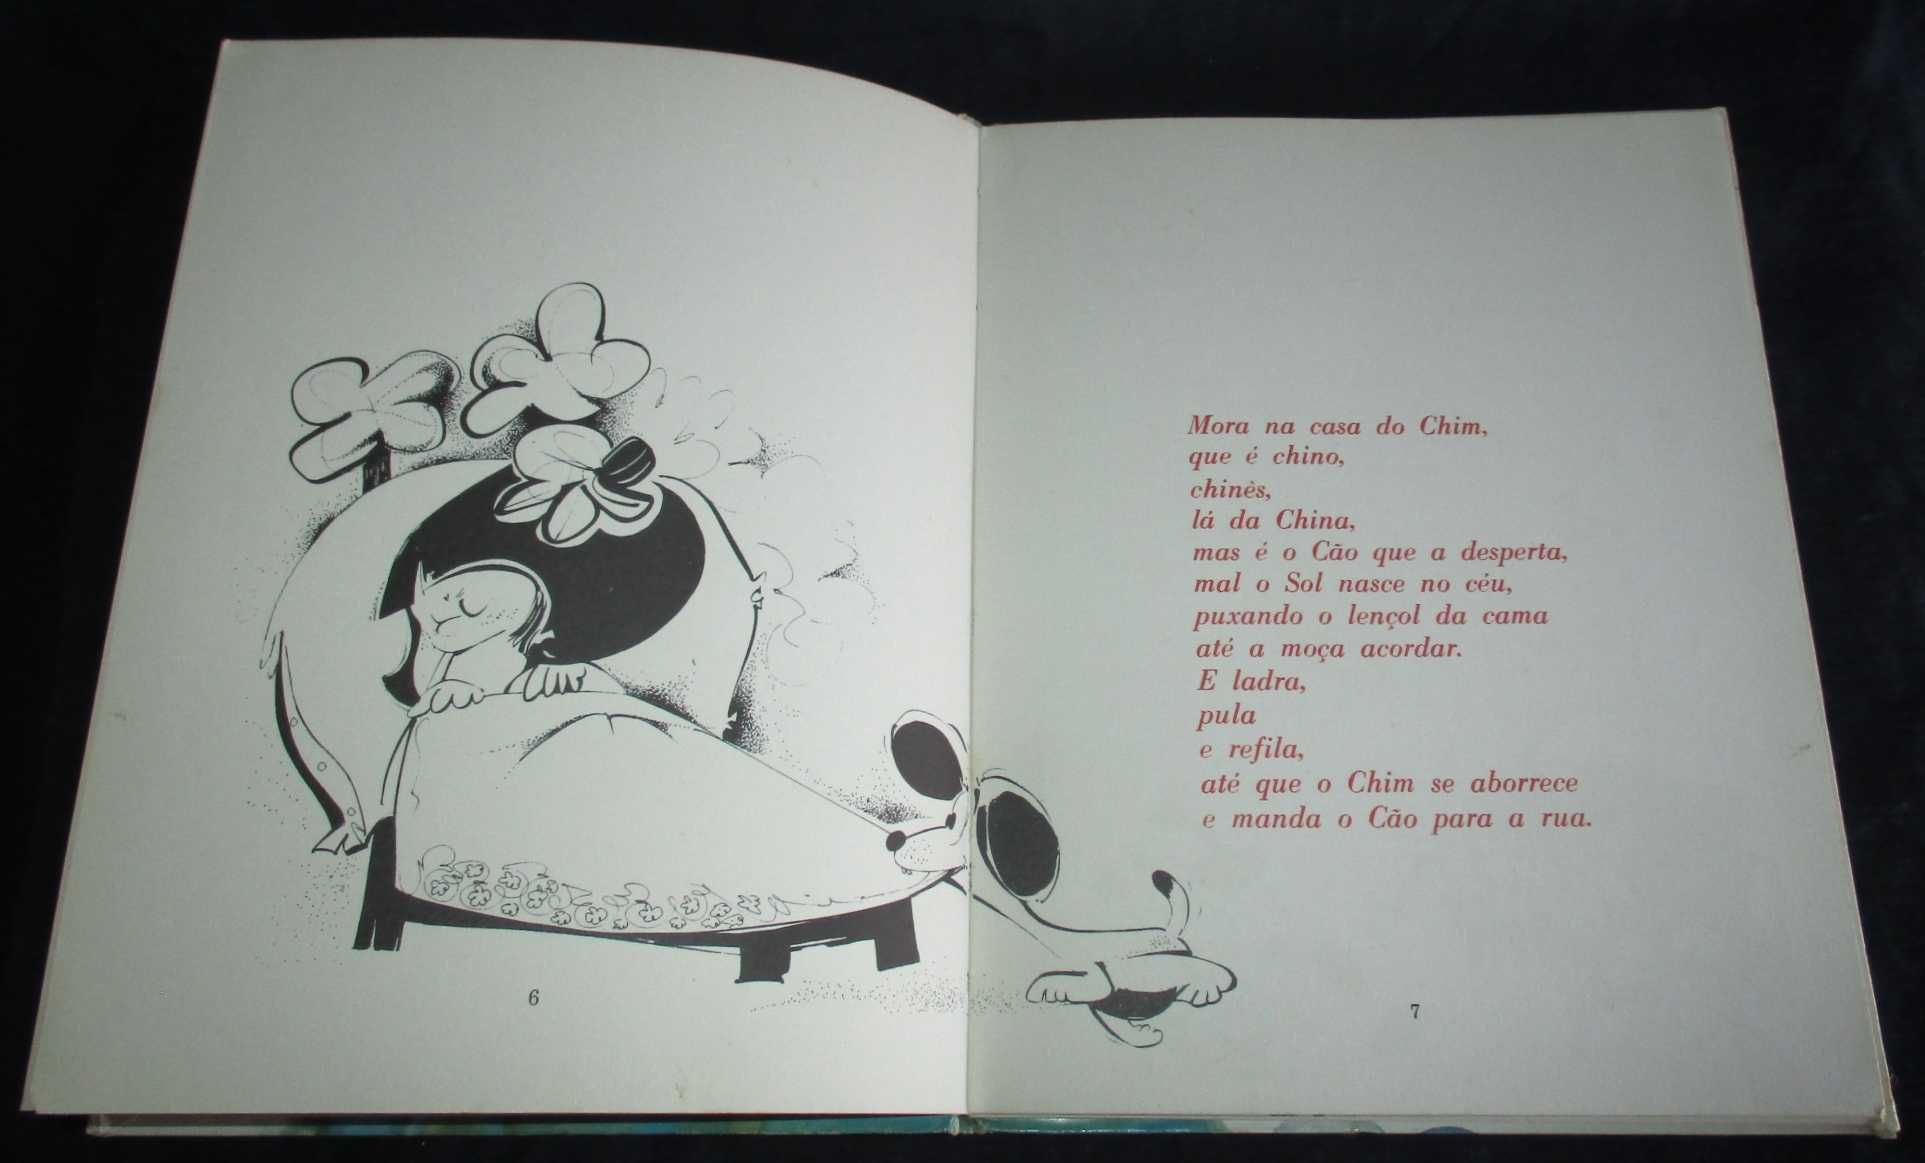 Livro Uma Flor Chamada Maria Alves Redol 1ª edição 1969